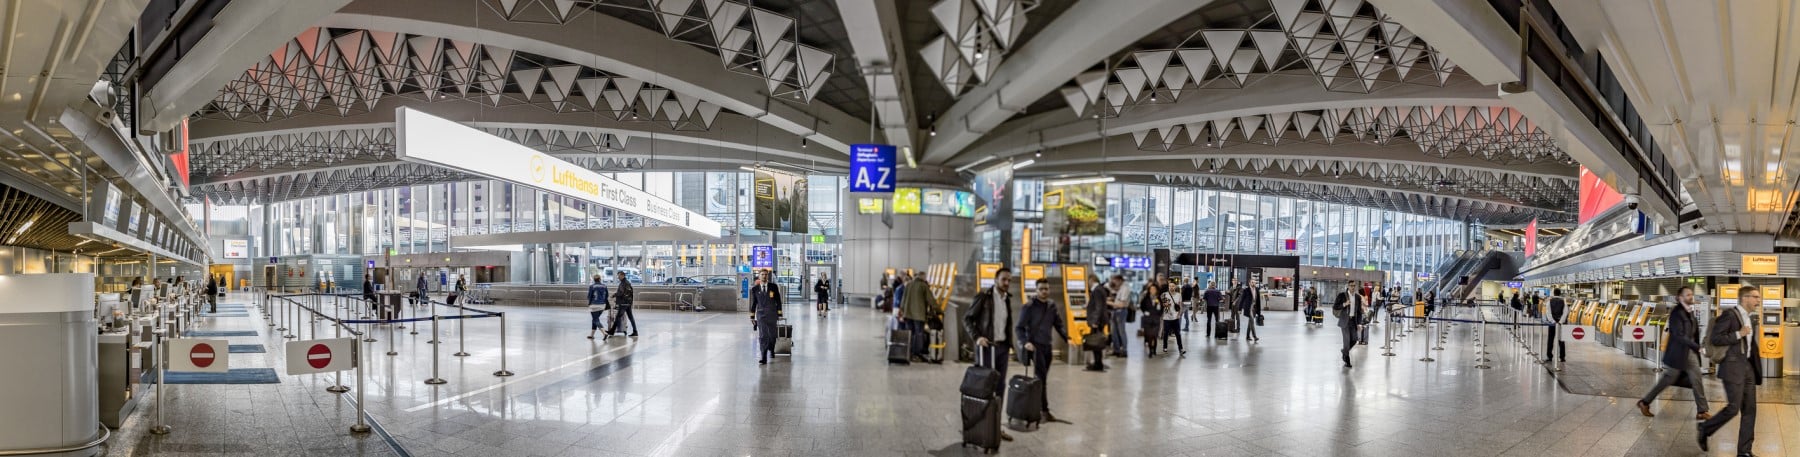 Flughafensicherheit: Wie ist die Security an Flughäfen gestaltet?